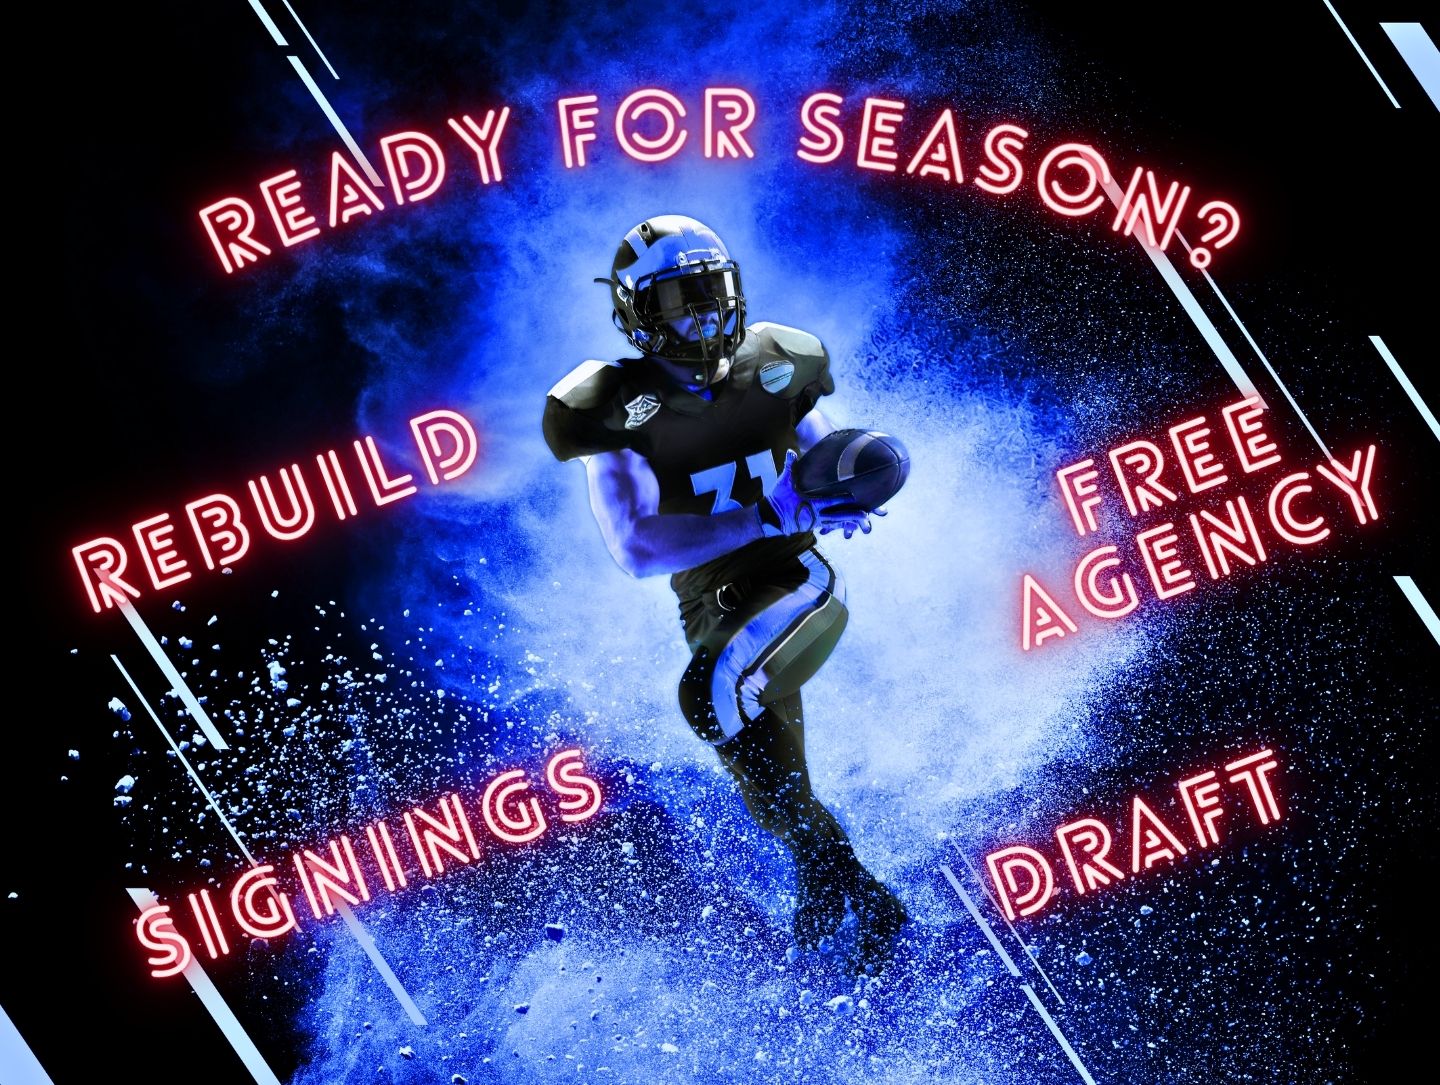 Ein Football-Spieler in Motion, um ihn drum herum stehen die Wörter "Ready for Season?, Rebuild, Draft, Free Agency